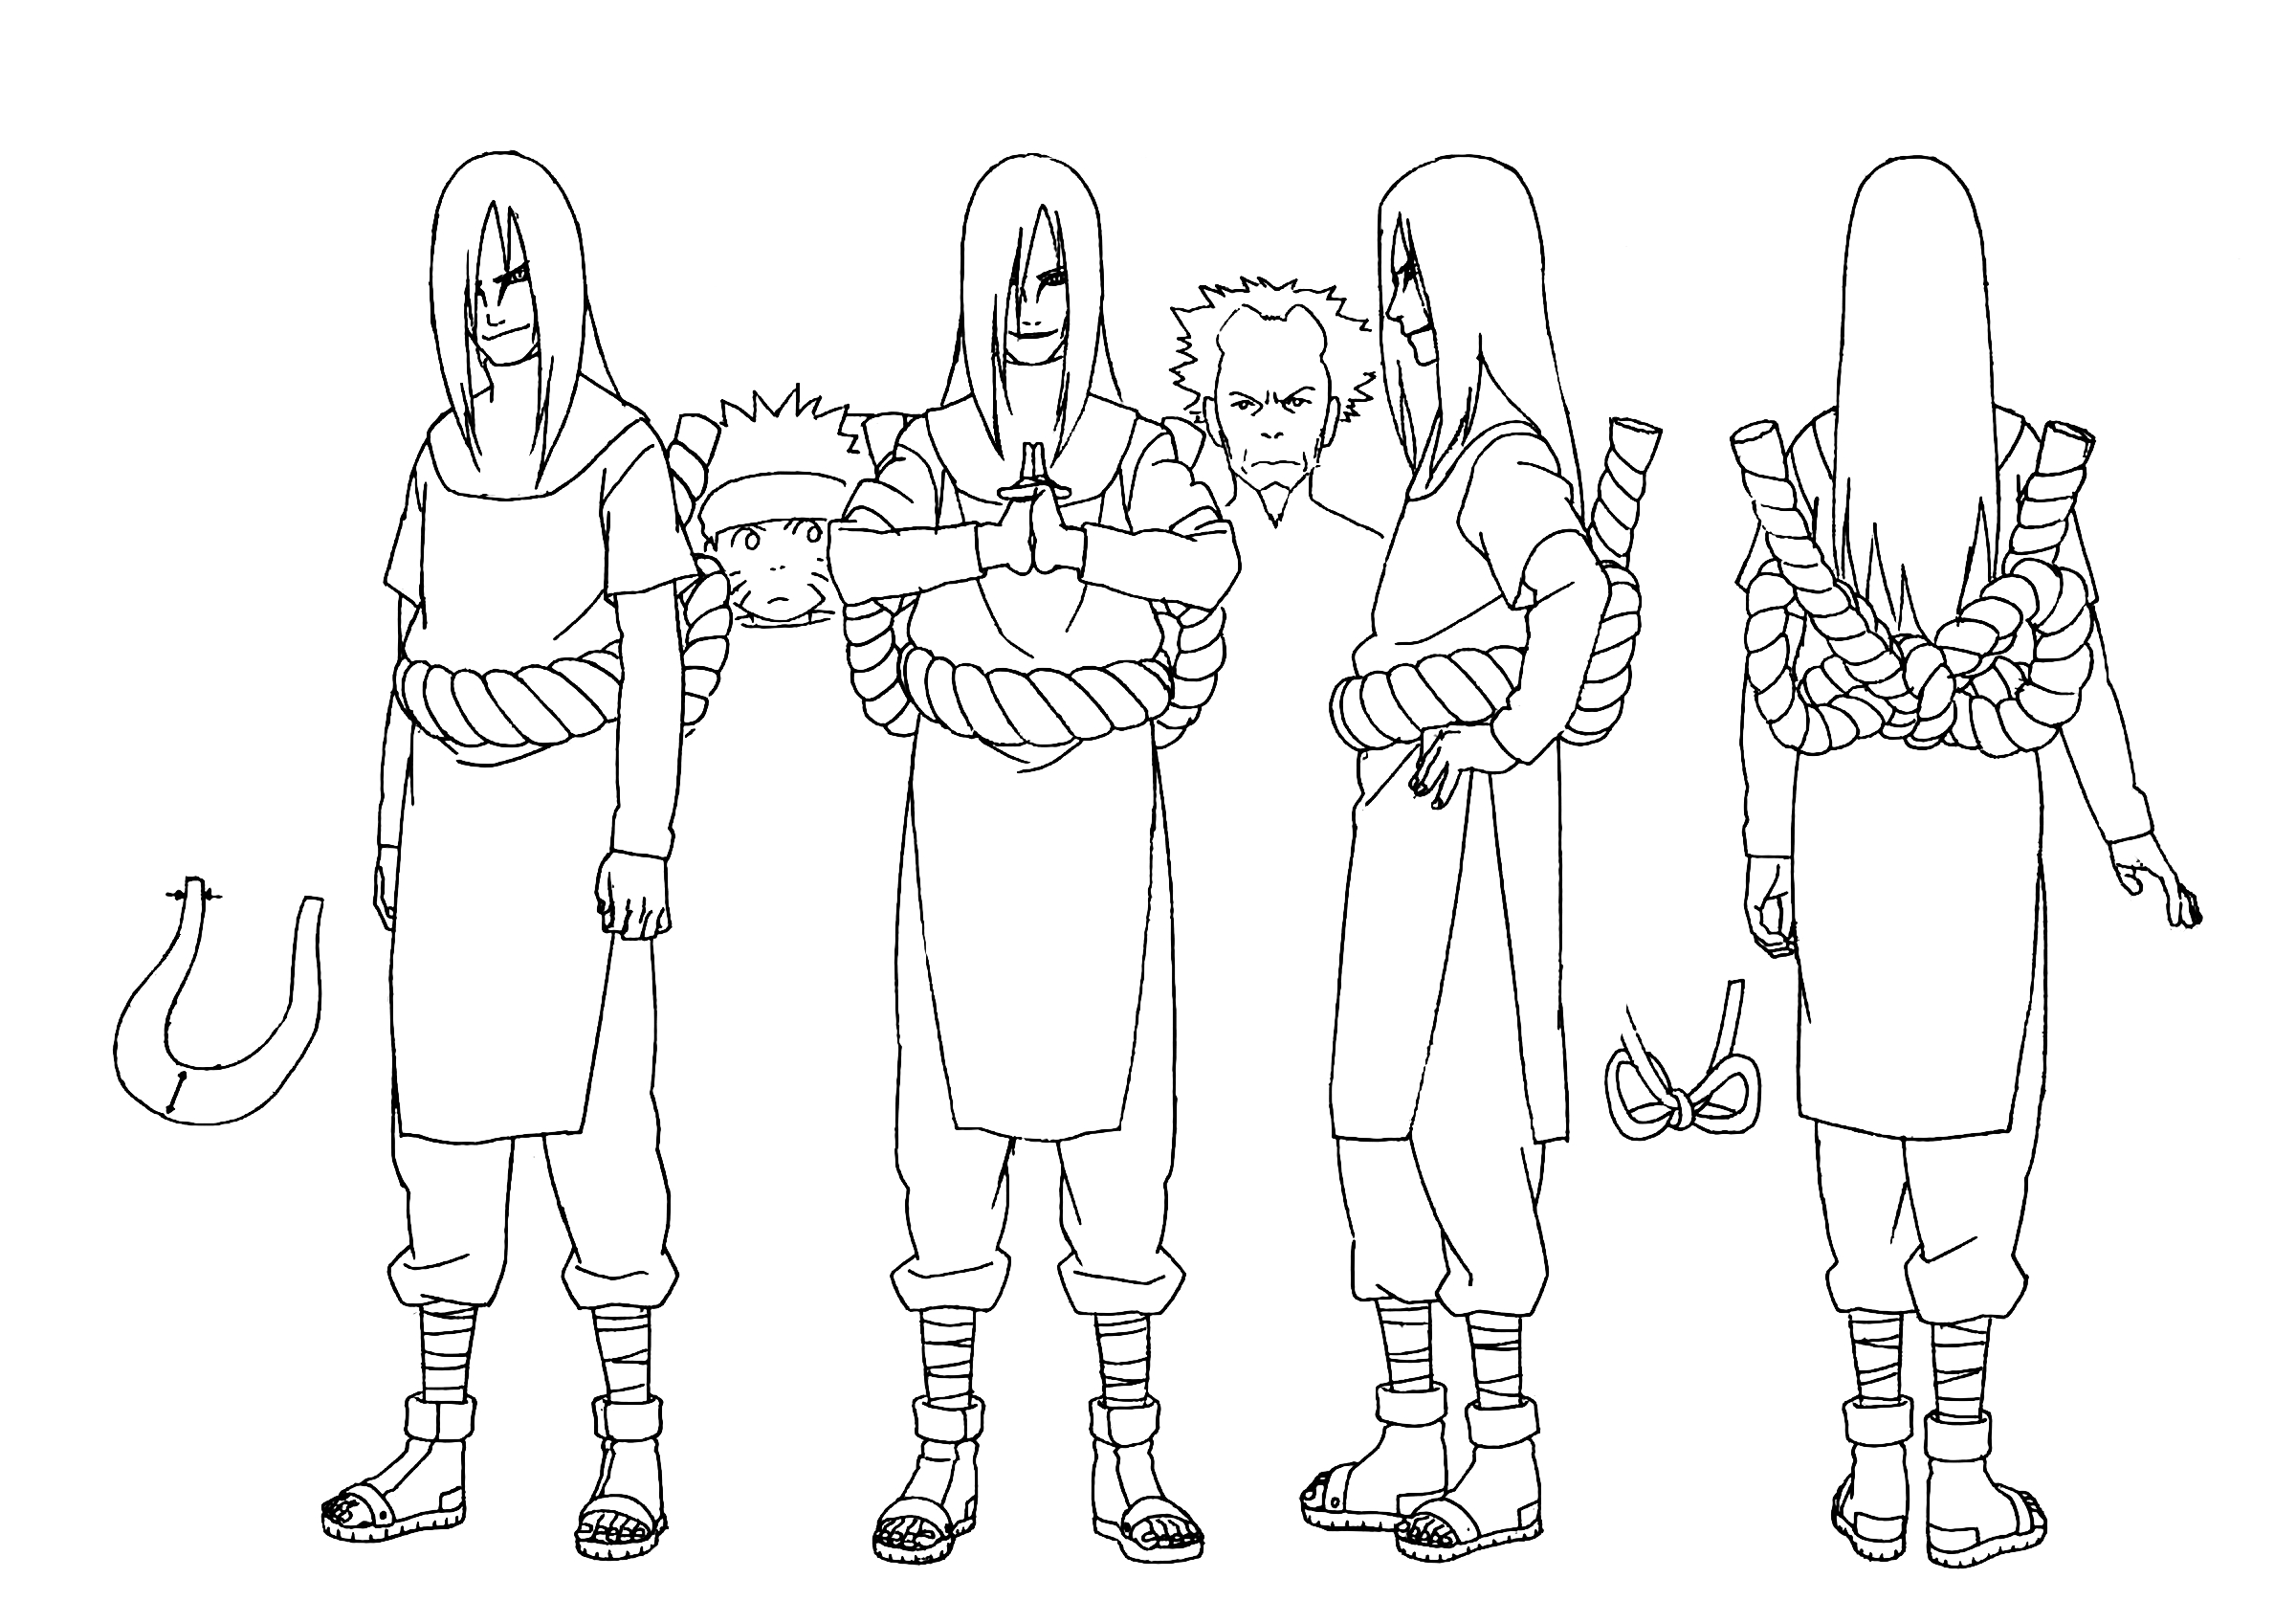 orochimaru, guren, and yuukimaru (naruto and 2 more) drawn by  nishio_tetsuya